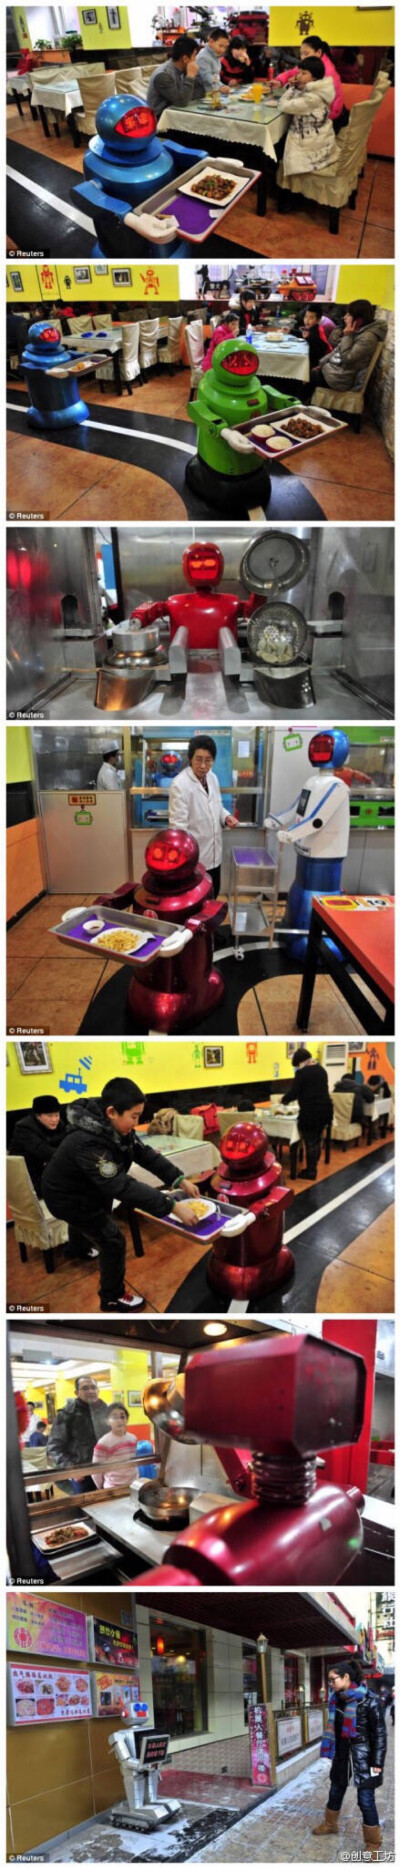 哈尔滨的一家饭店逆天了。。里面有一帮机器人，可以做饺子，面条，还可以送货，干活不利索的还可以选择蹲门口迎接客人。。